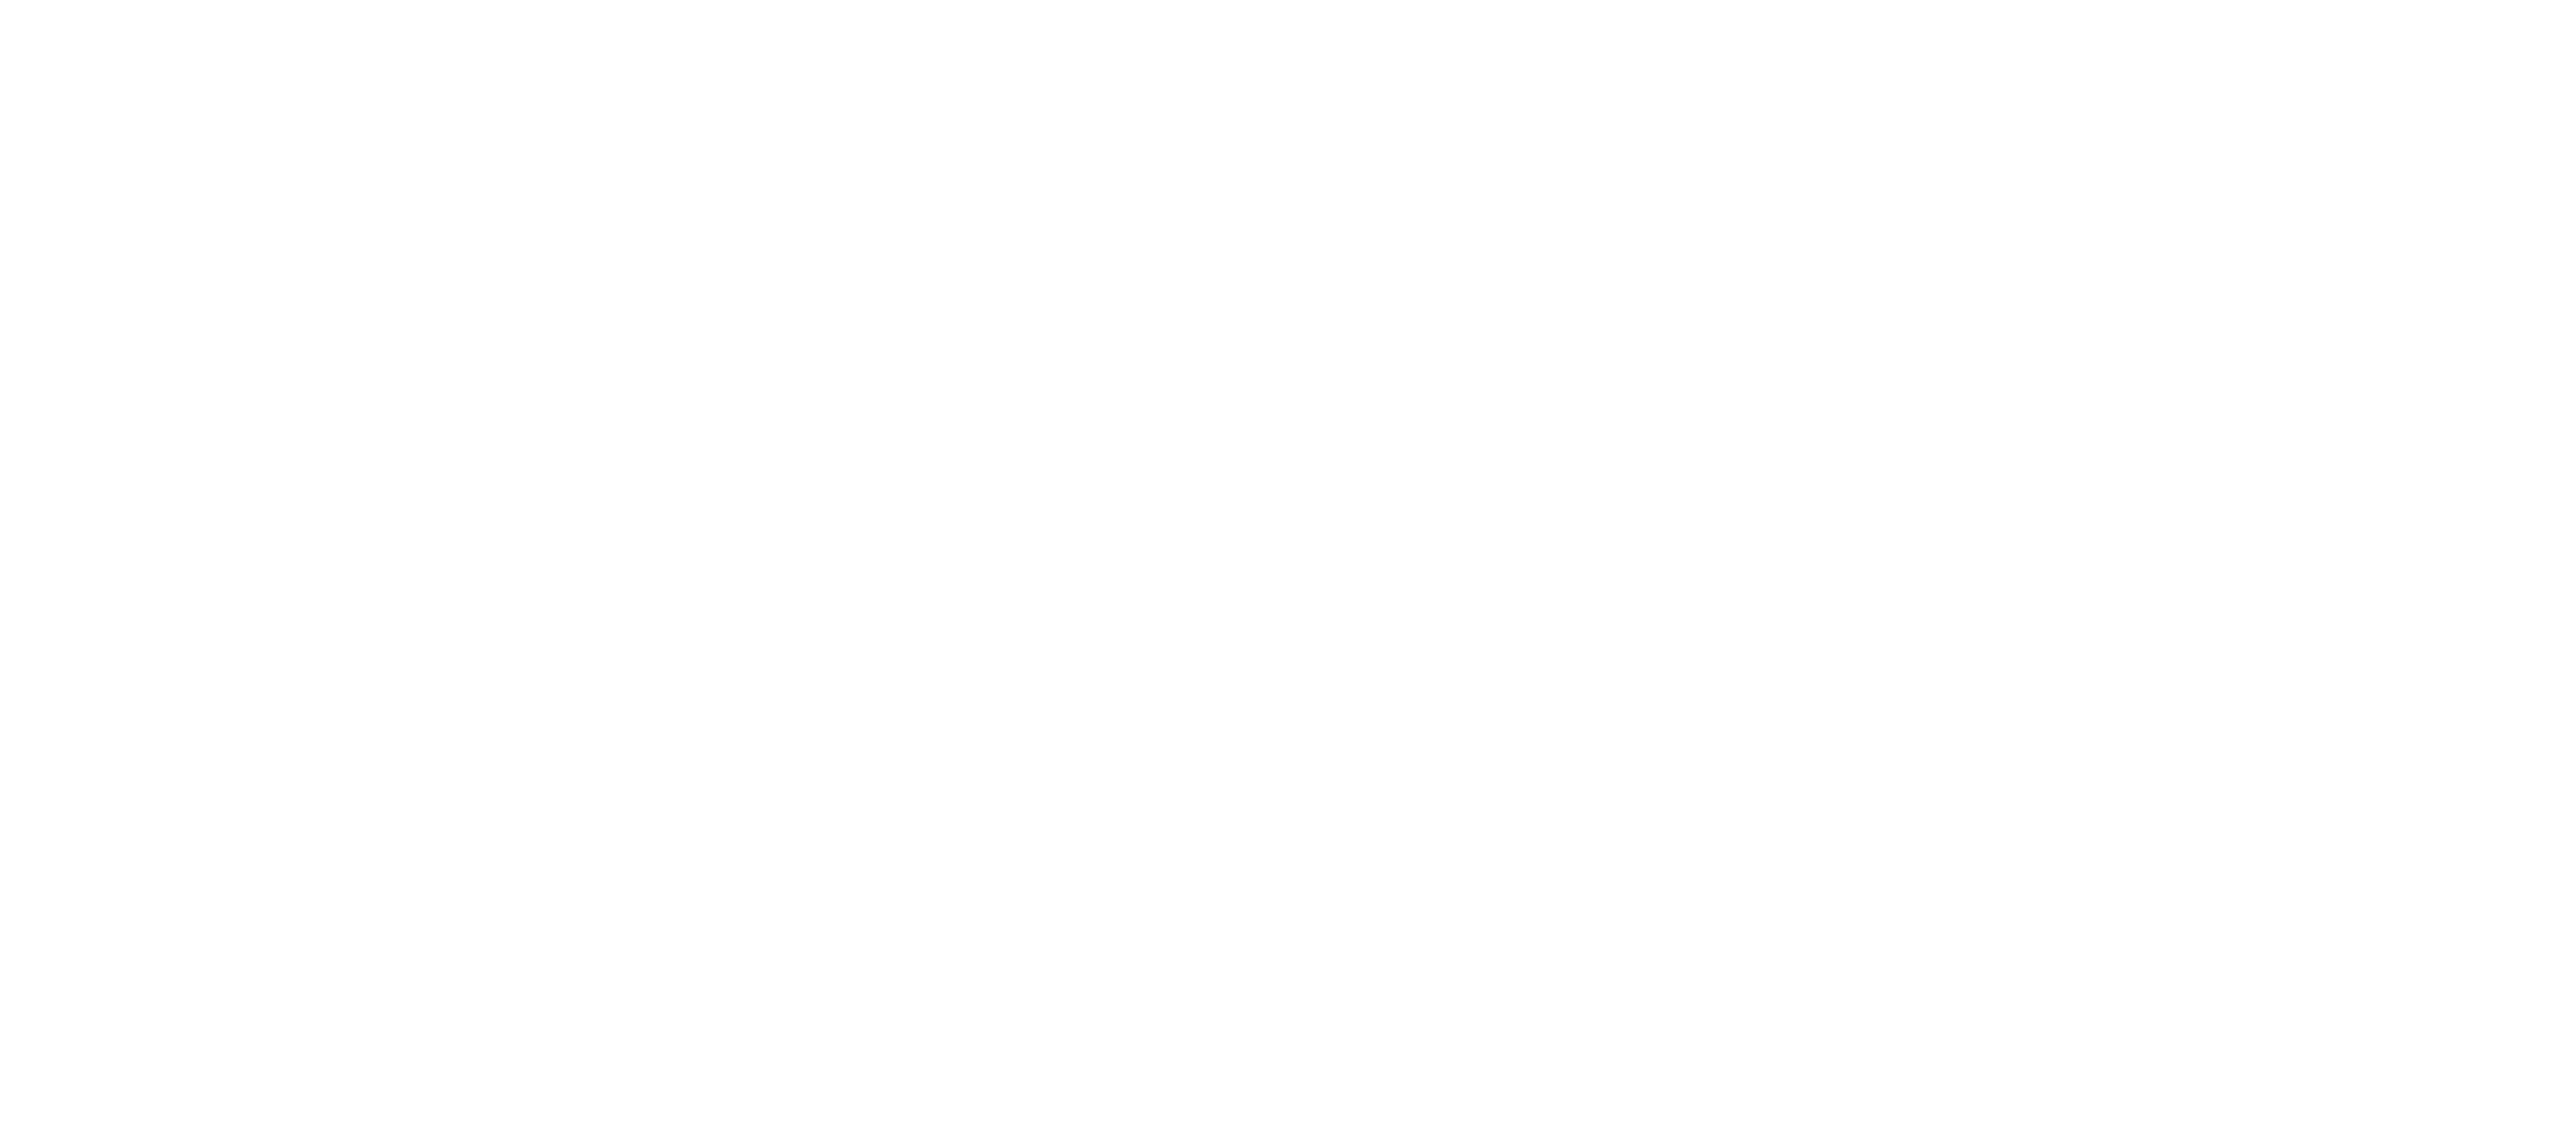 Peerview Data